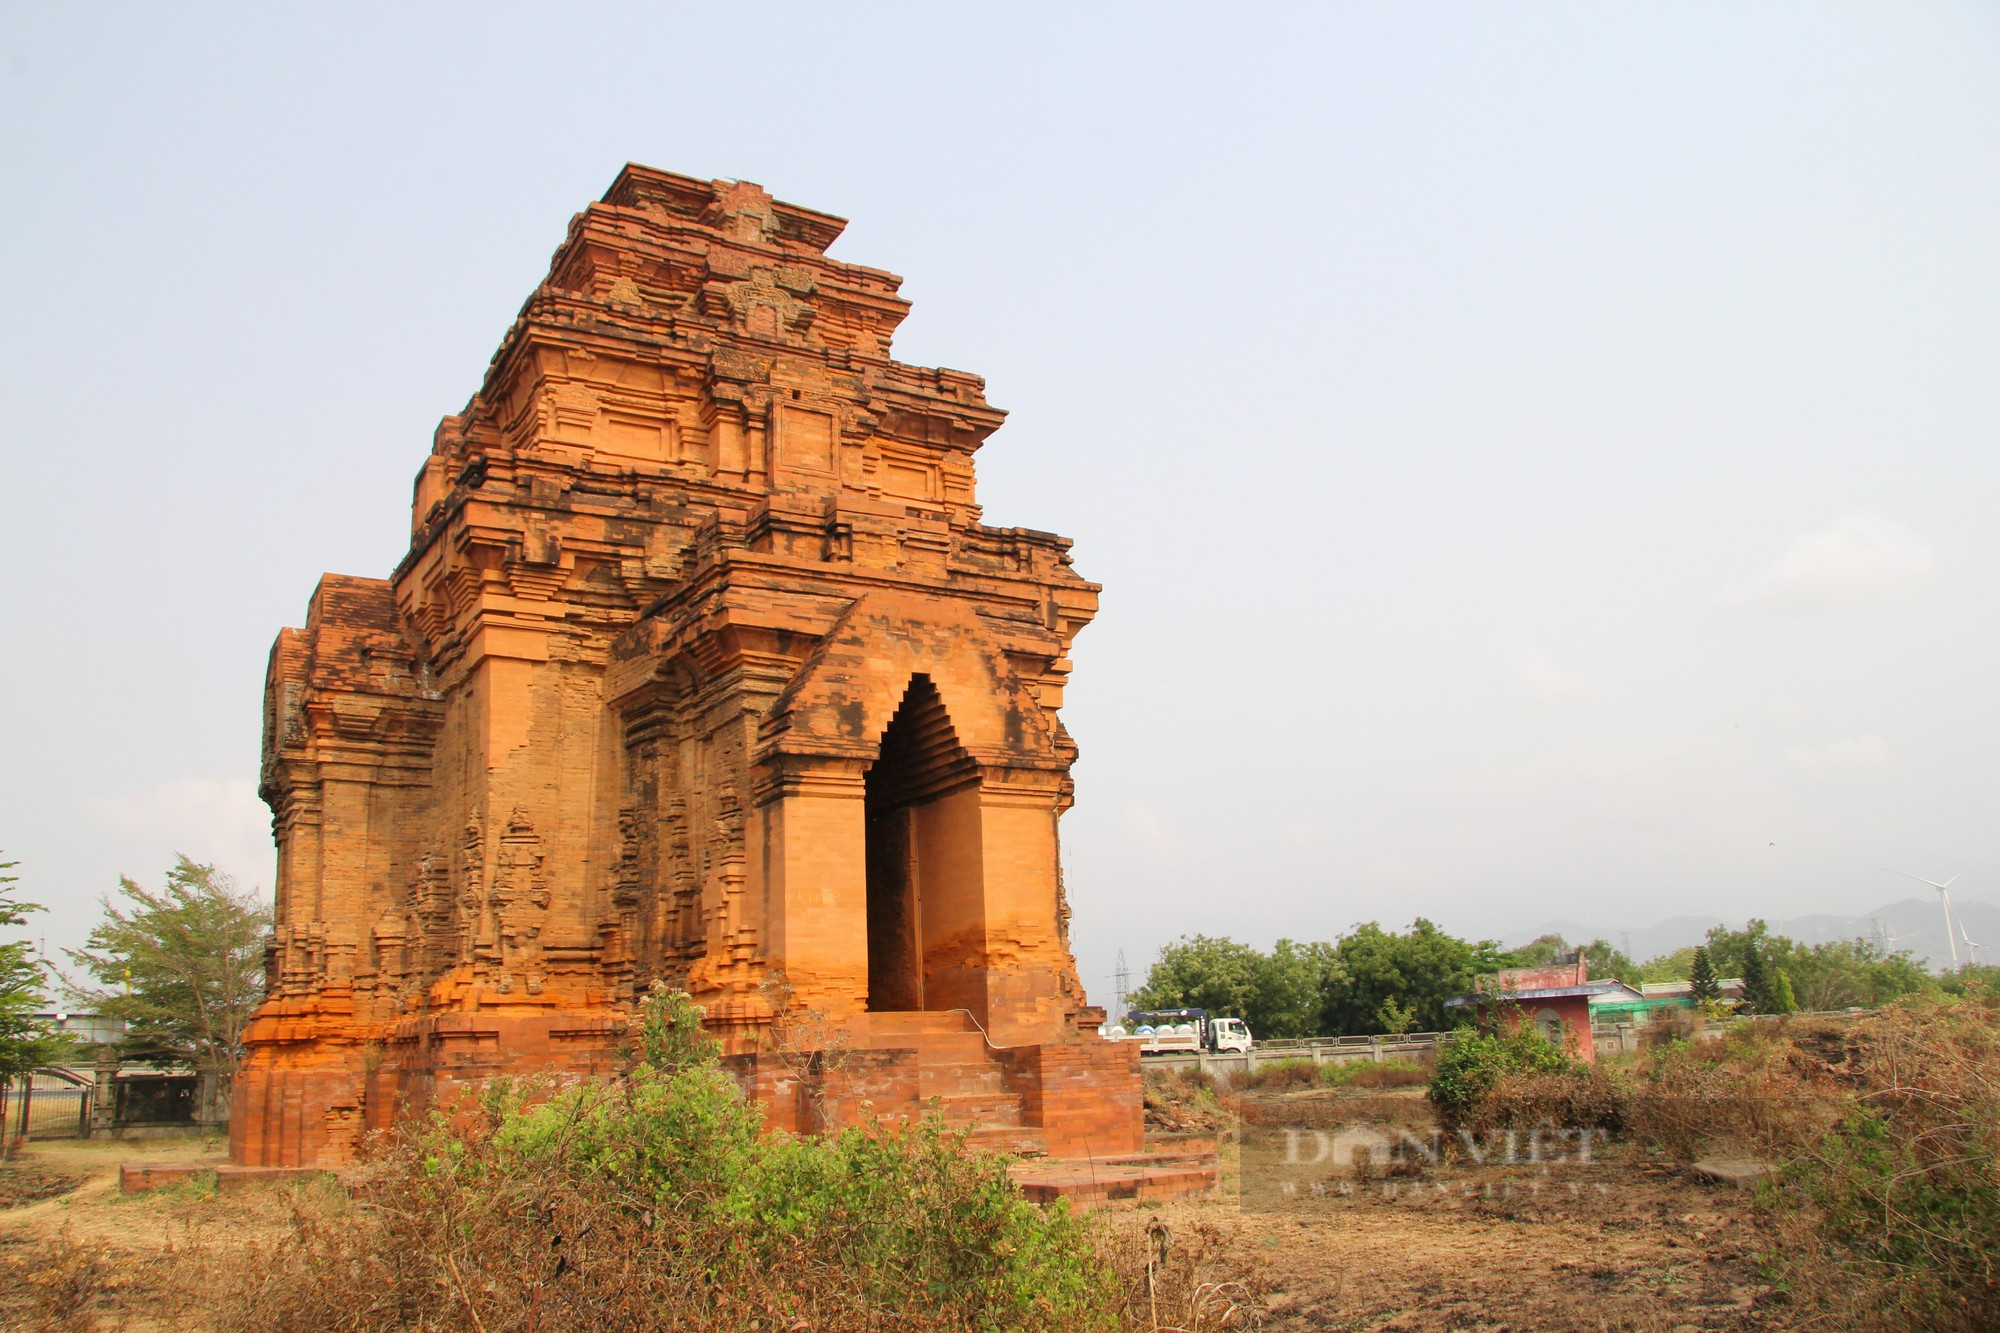 Bí ẩn tháp Chăm cổ “bị bỏ rơi” lại là nơi lưu giữ bảo vật Quốc gia có một không hai ở Ninh Thuận - Ảnh 3.